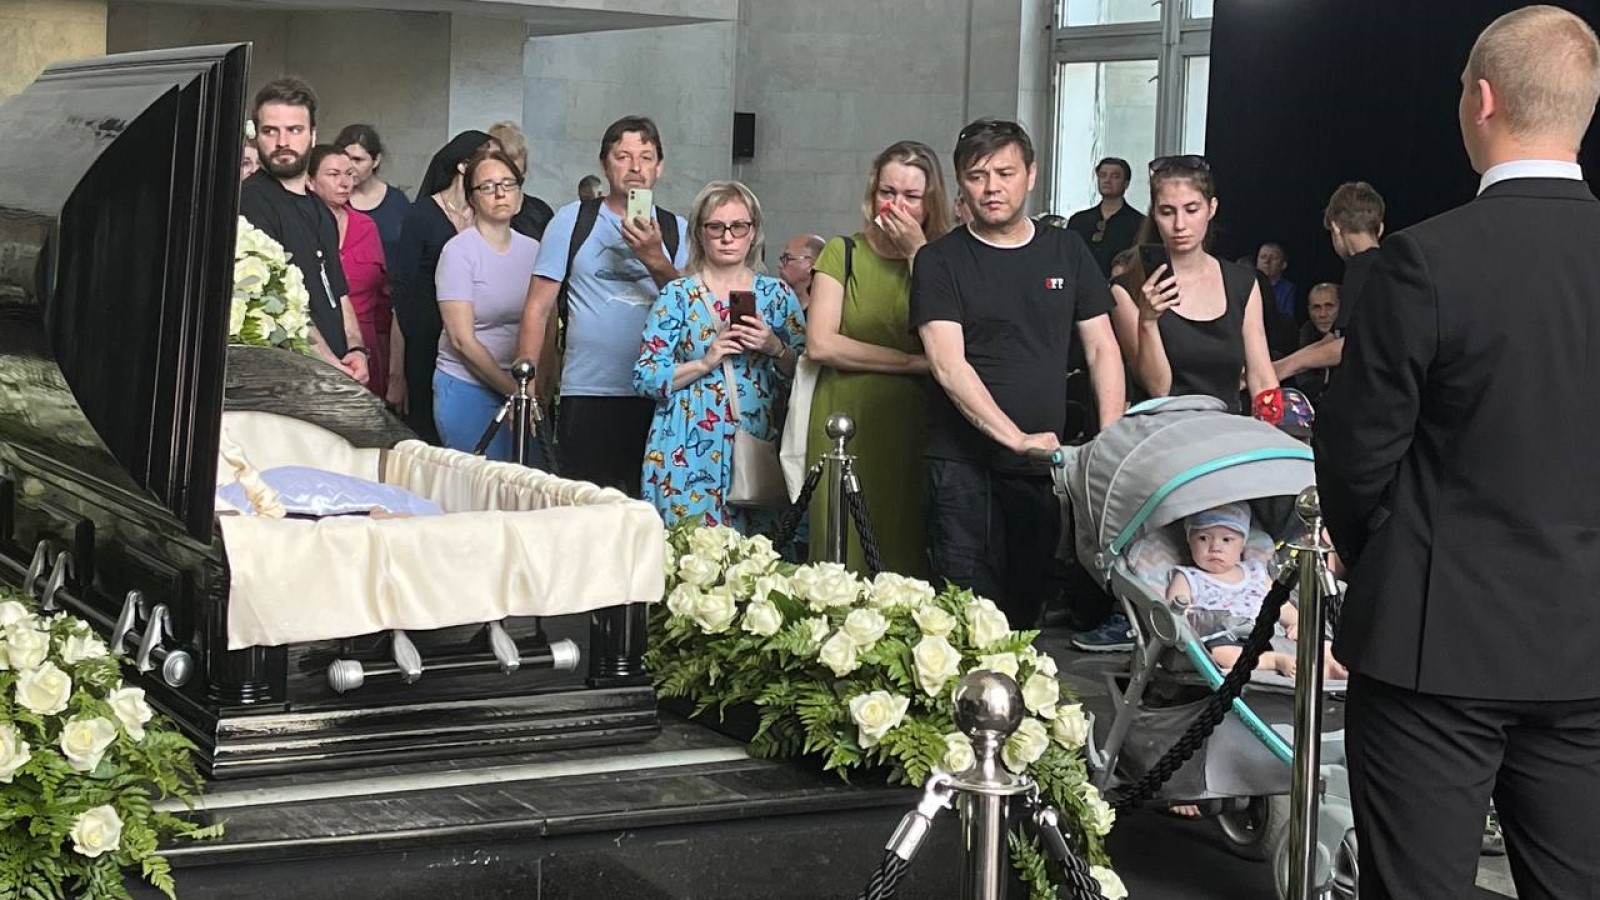 Похоронить кремация. Похороныюрмя Шатунова. Семья Шатунова на похоронах Юрия Шатунова.